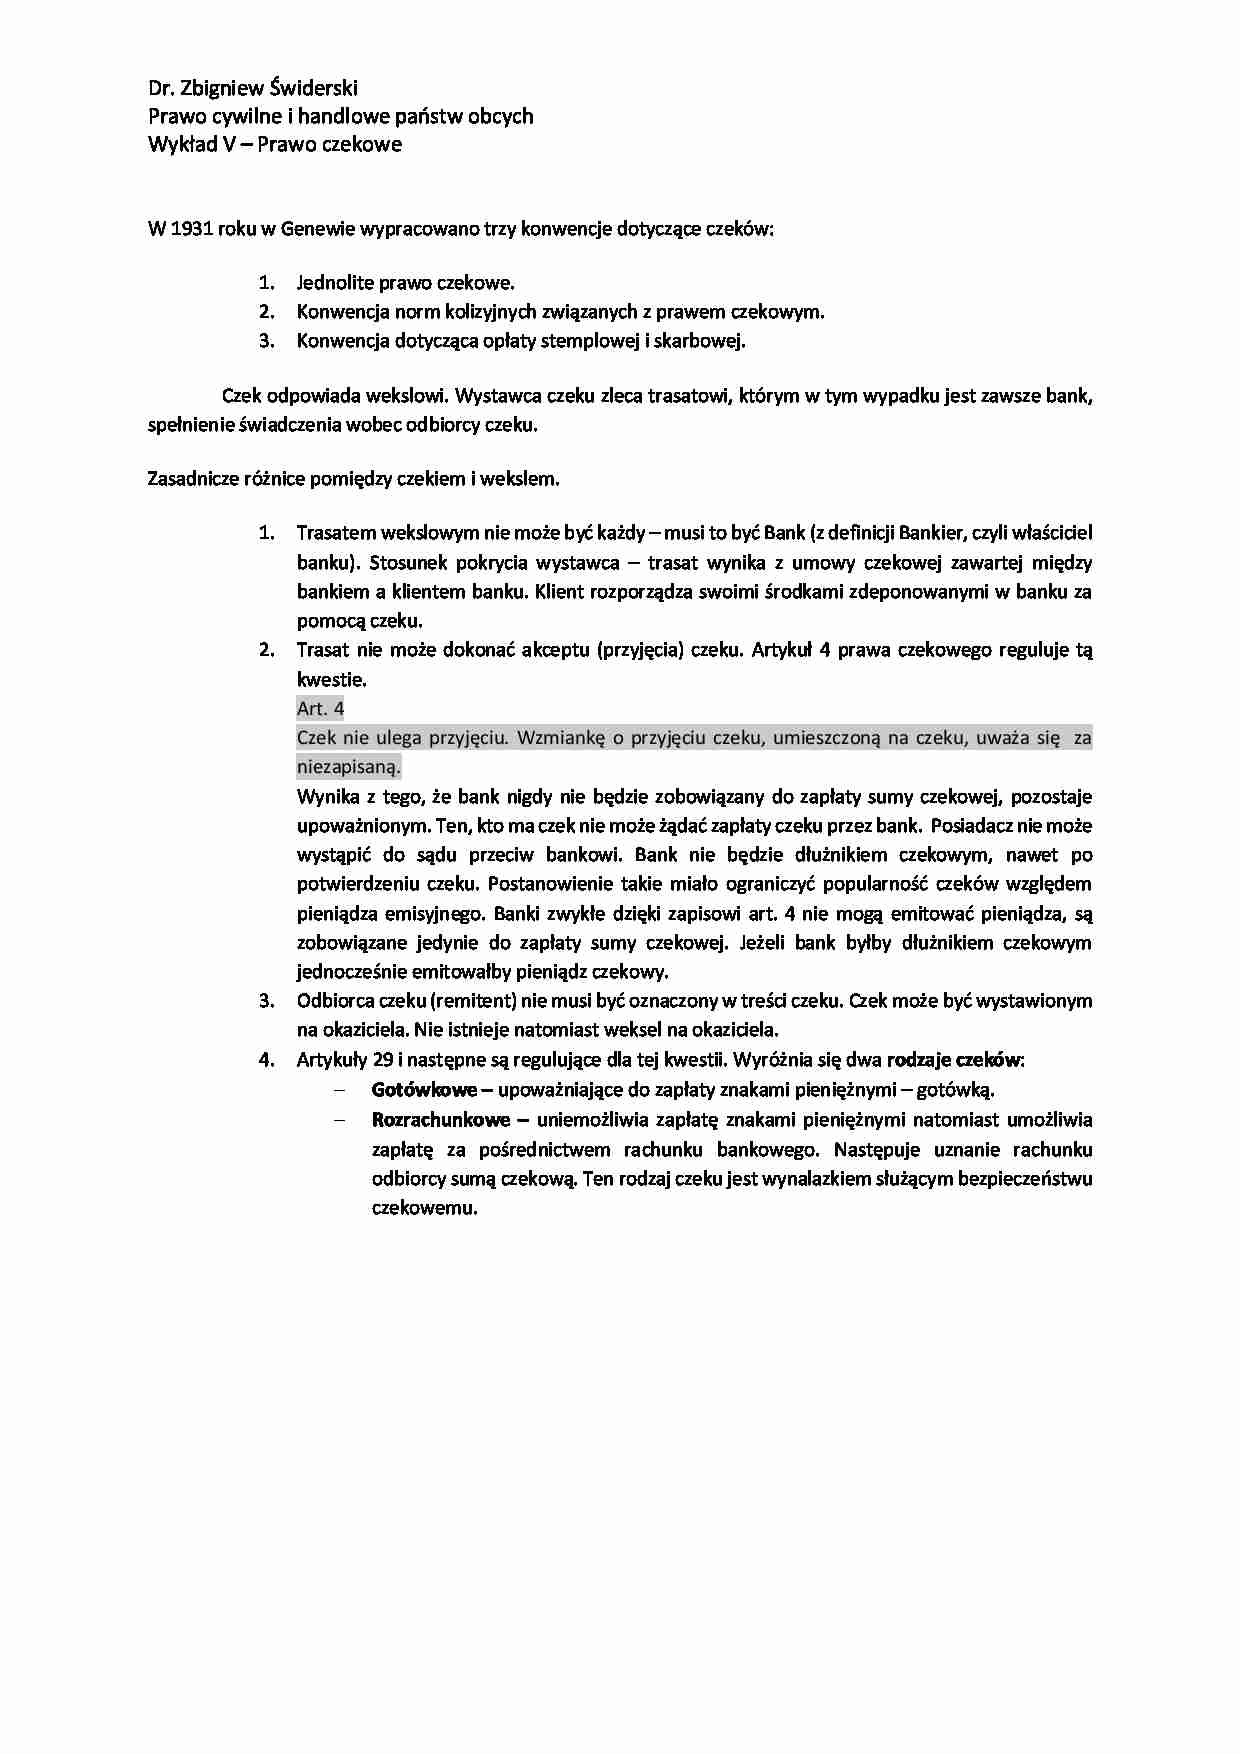 Prawo cywilne i handlowe państw obcych - Prawo czekowe - strona 1